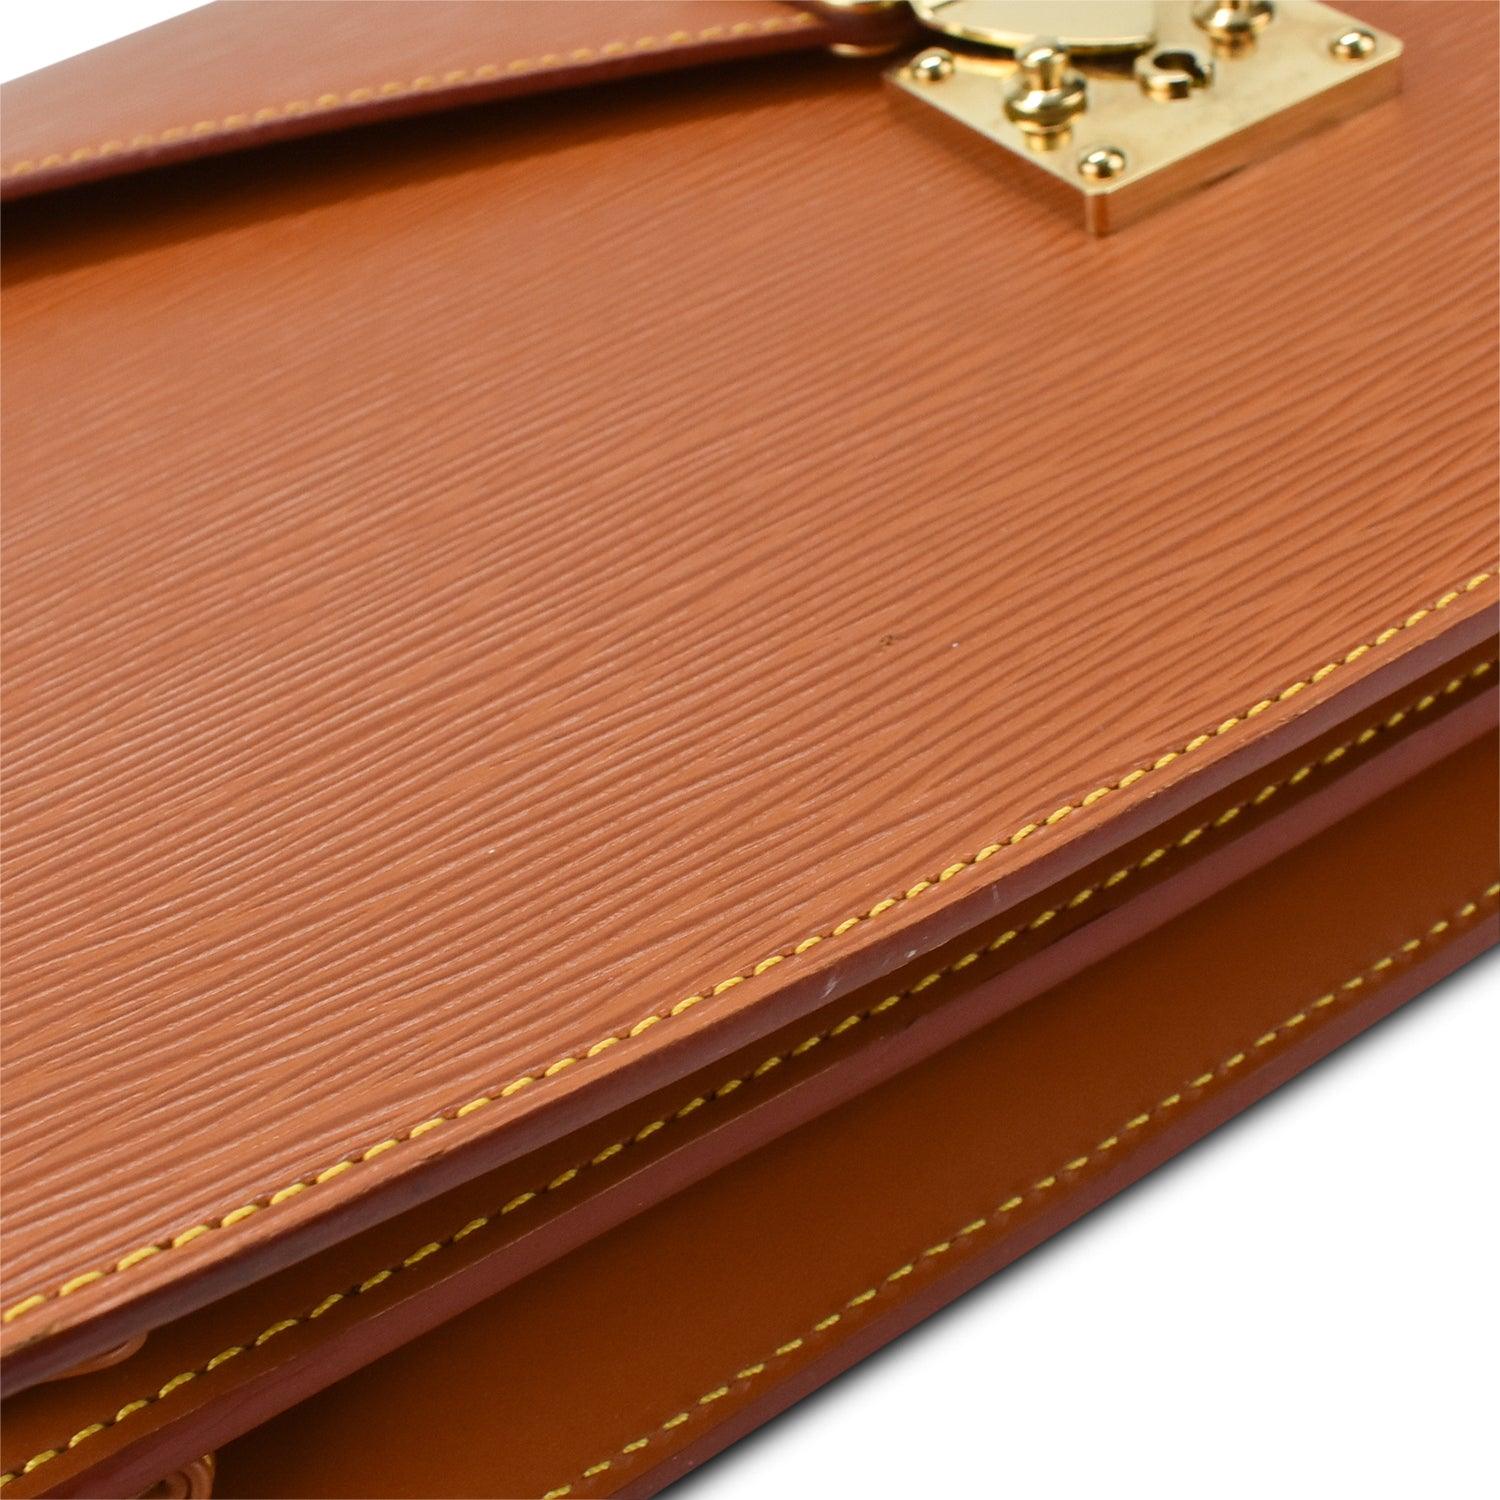 Louis Vuitton Ambassadeur Briefcase 382637